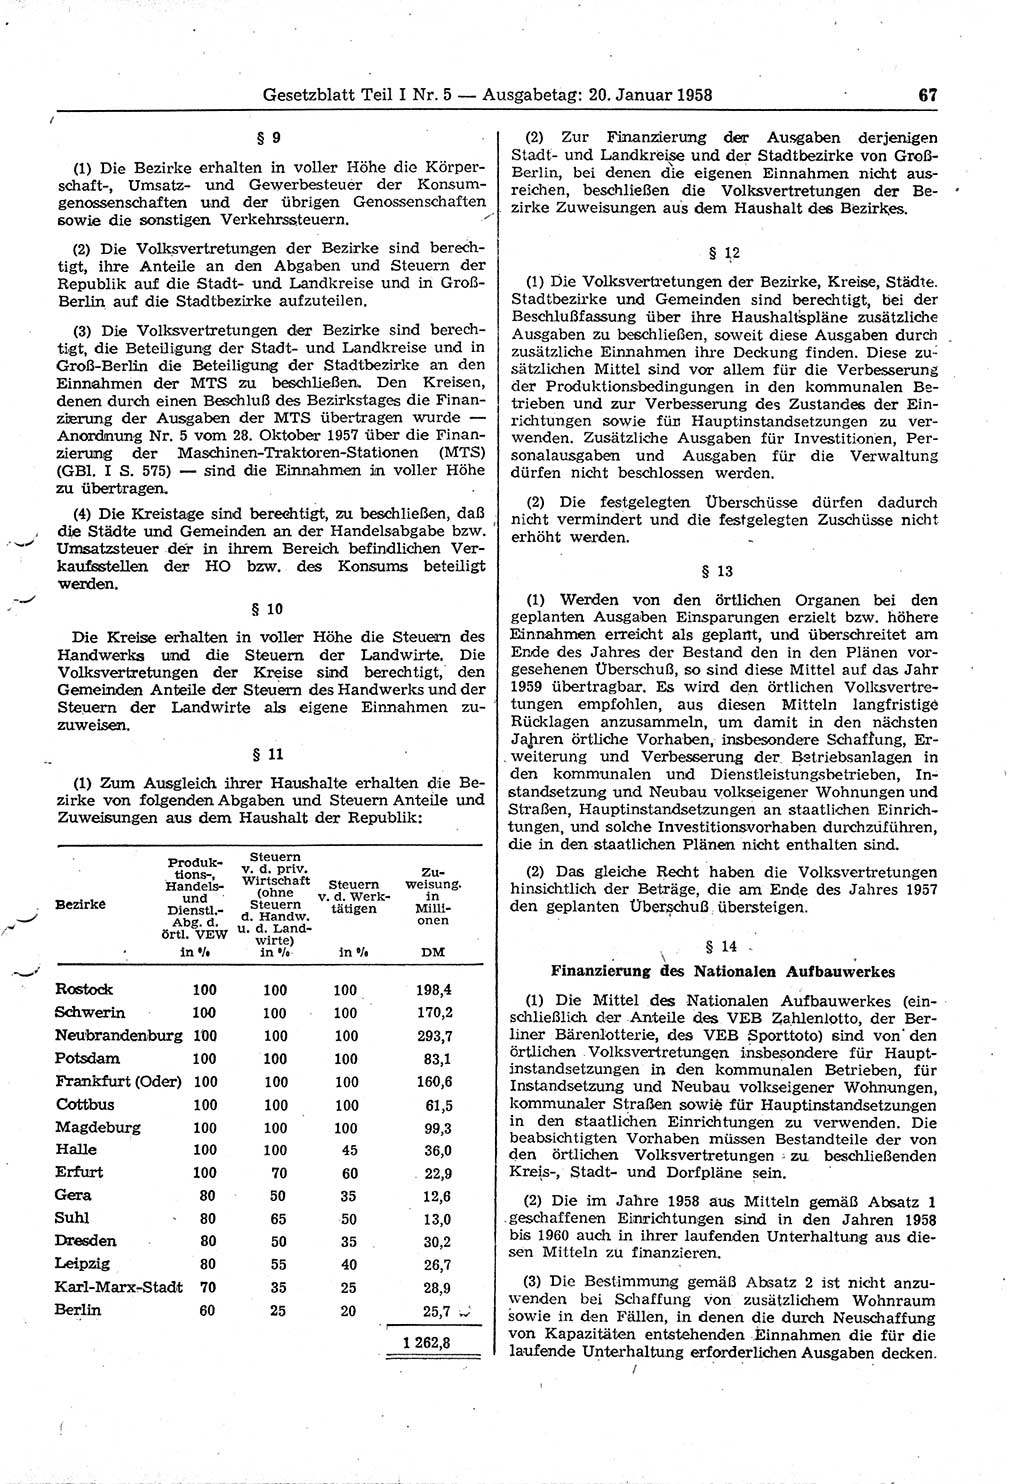 Gesetzblatt (GBl.) der Deutschen Demokratischen Republik (DDR) Teil Ⅰ 1958, Seite 67 (GBl. DDR Ⅰ 1958, S. 67)